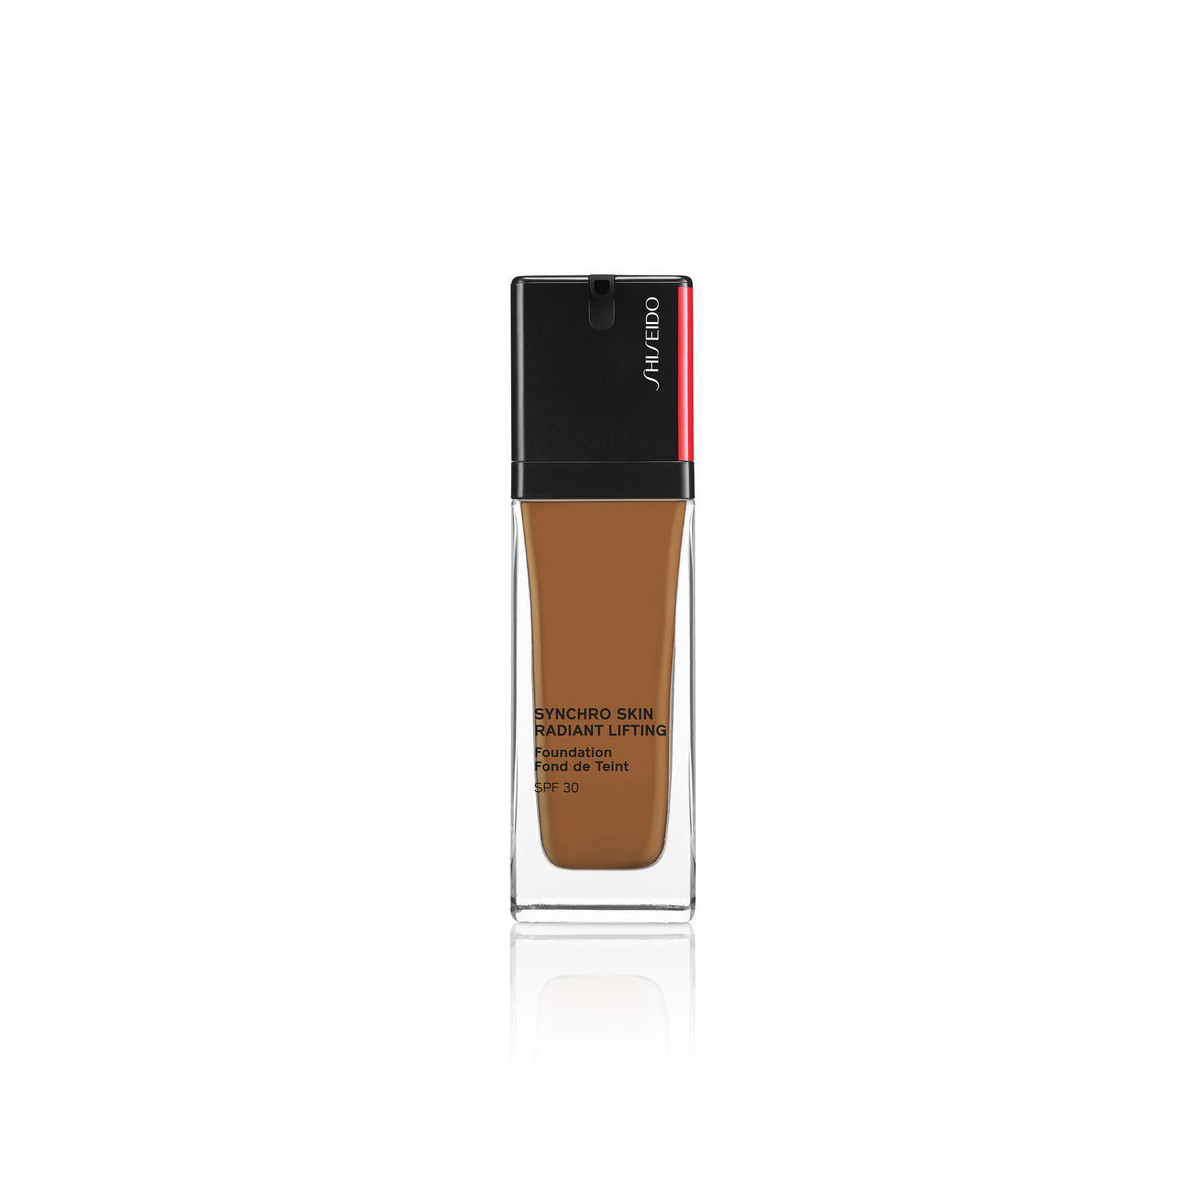 Fondotinta Shiseido Synchro Skin Radiant Lifting Foundation 510